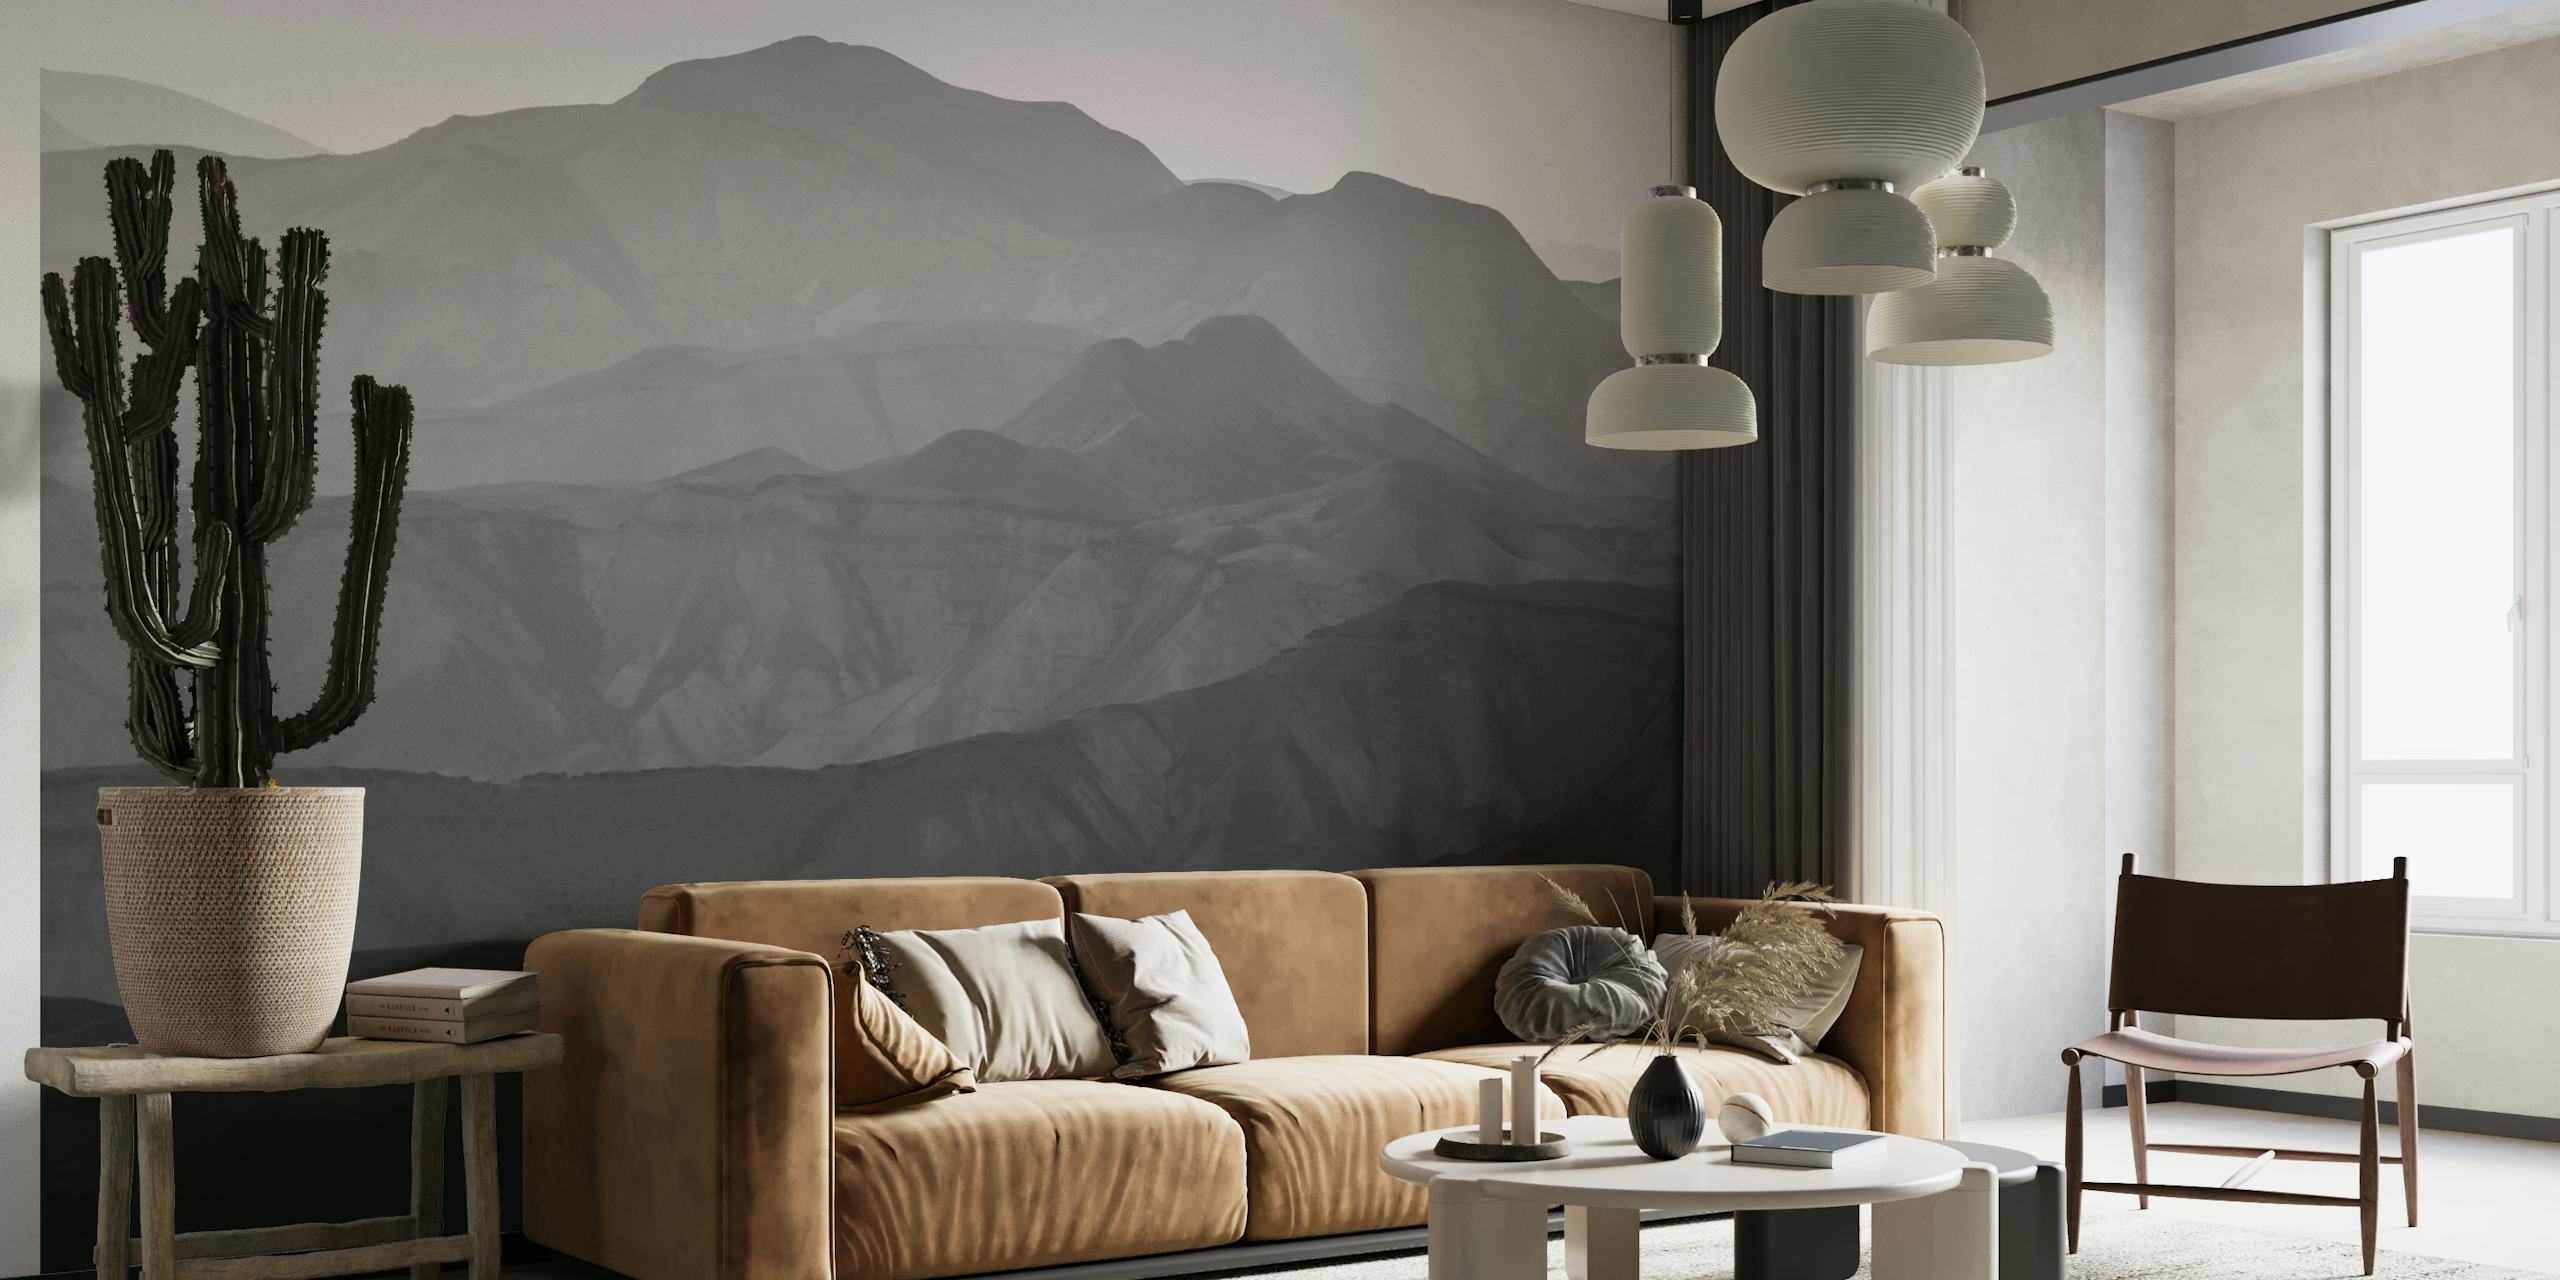 Monochroom fotobehang van de bergen van de Judea-woestijn die rust toevoegen aan het interieur